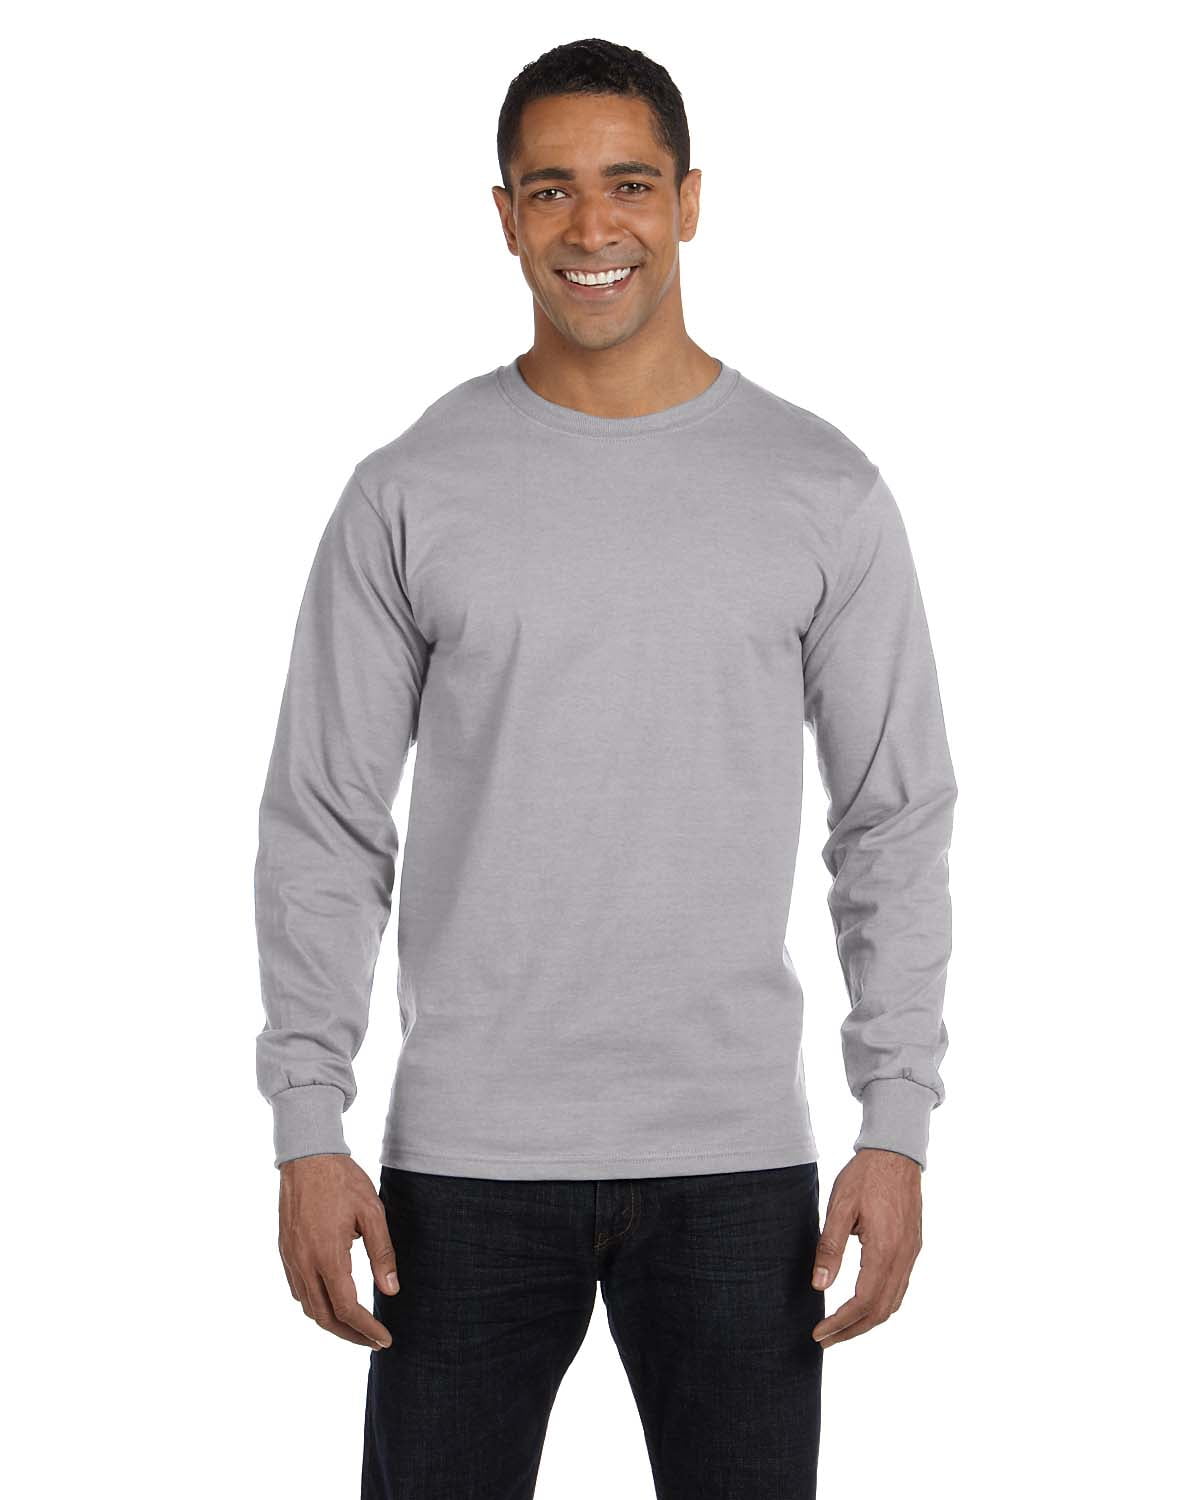 Gildan Mens DryBlend Long Sleeve T-Shirt Style G8400 2-Pack Shirt